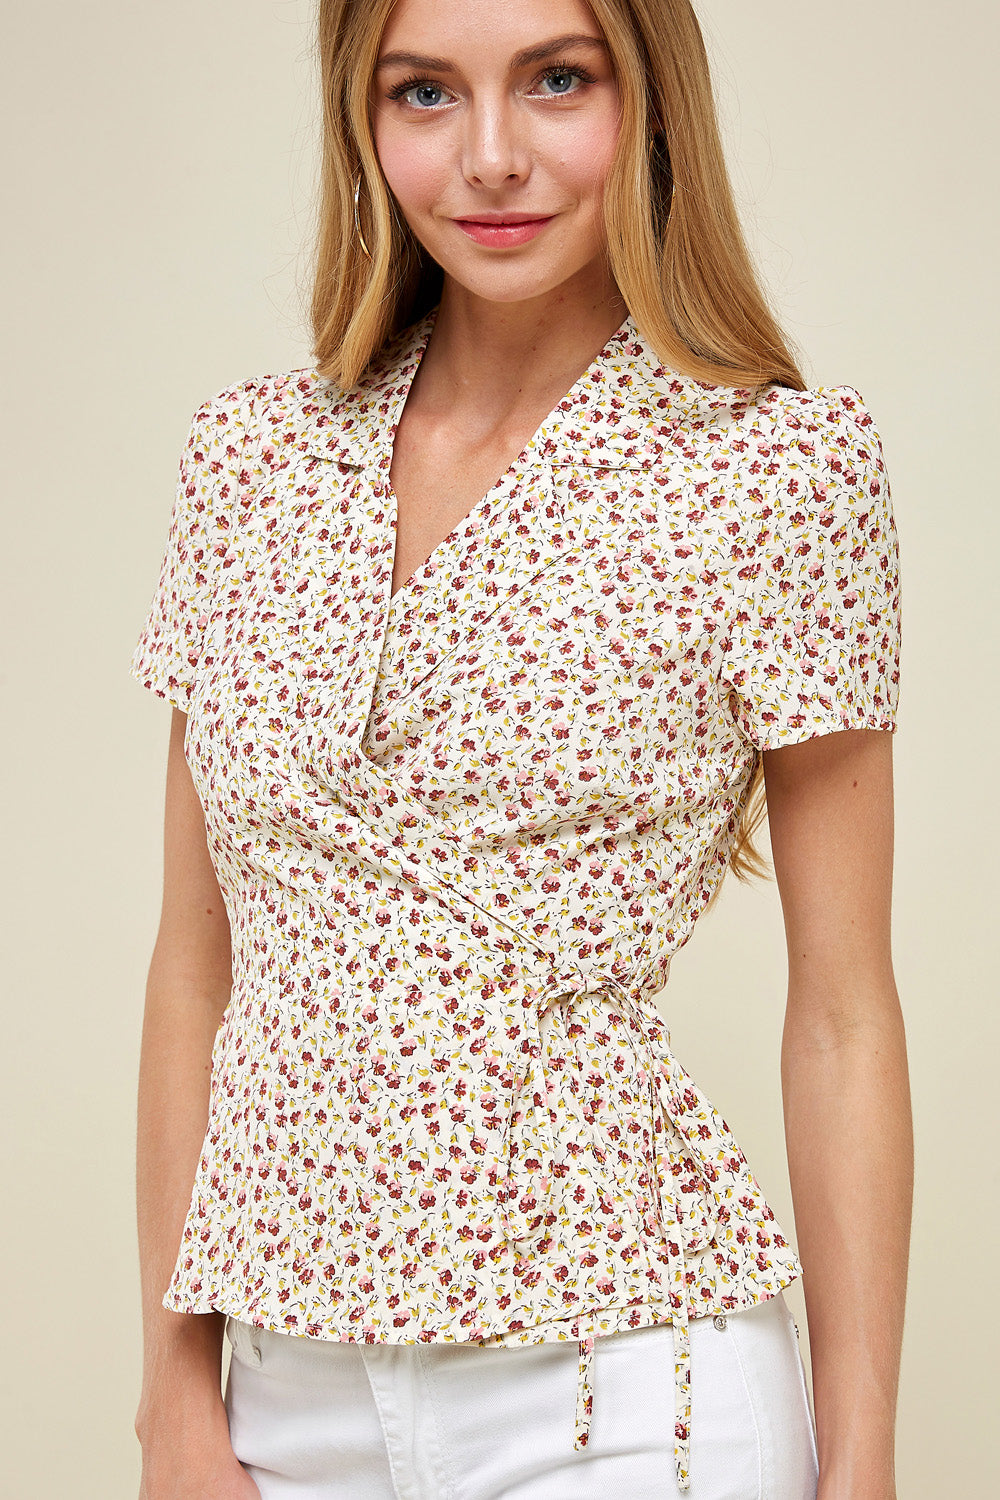 [$4/piece] Floral wrap blouse top